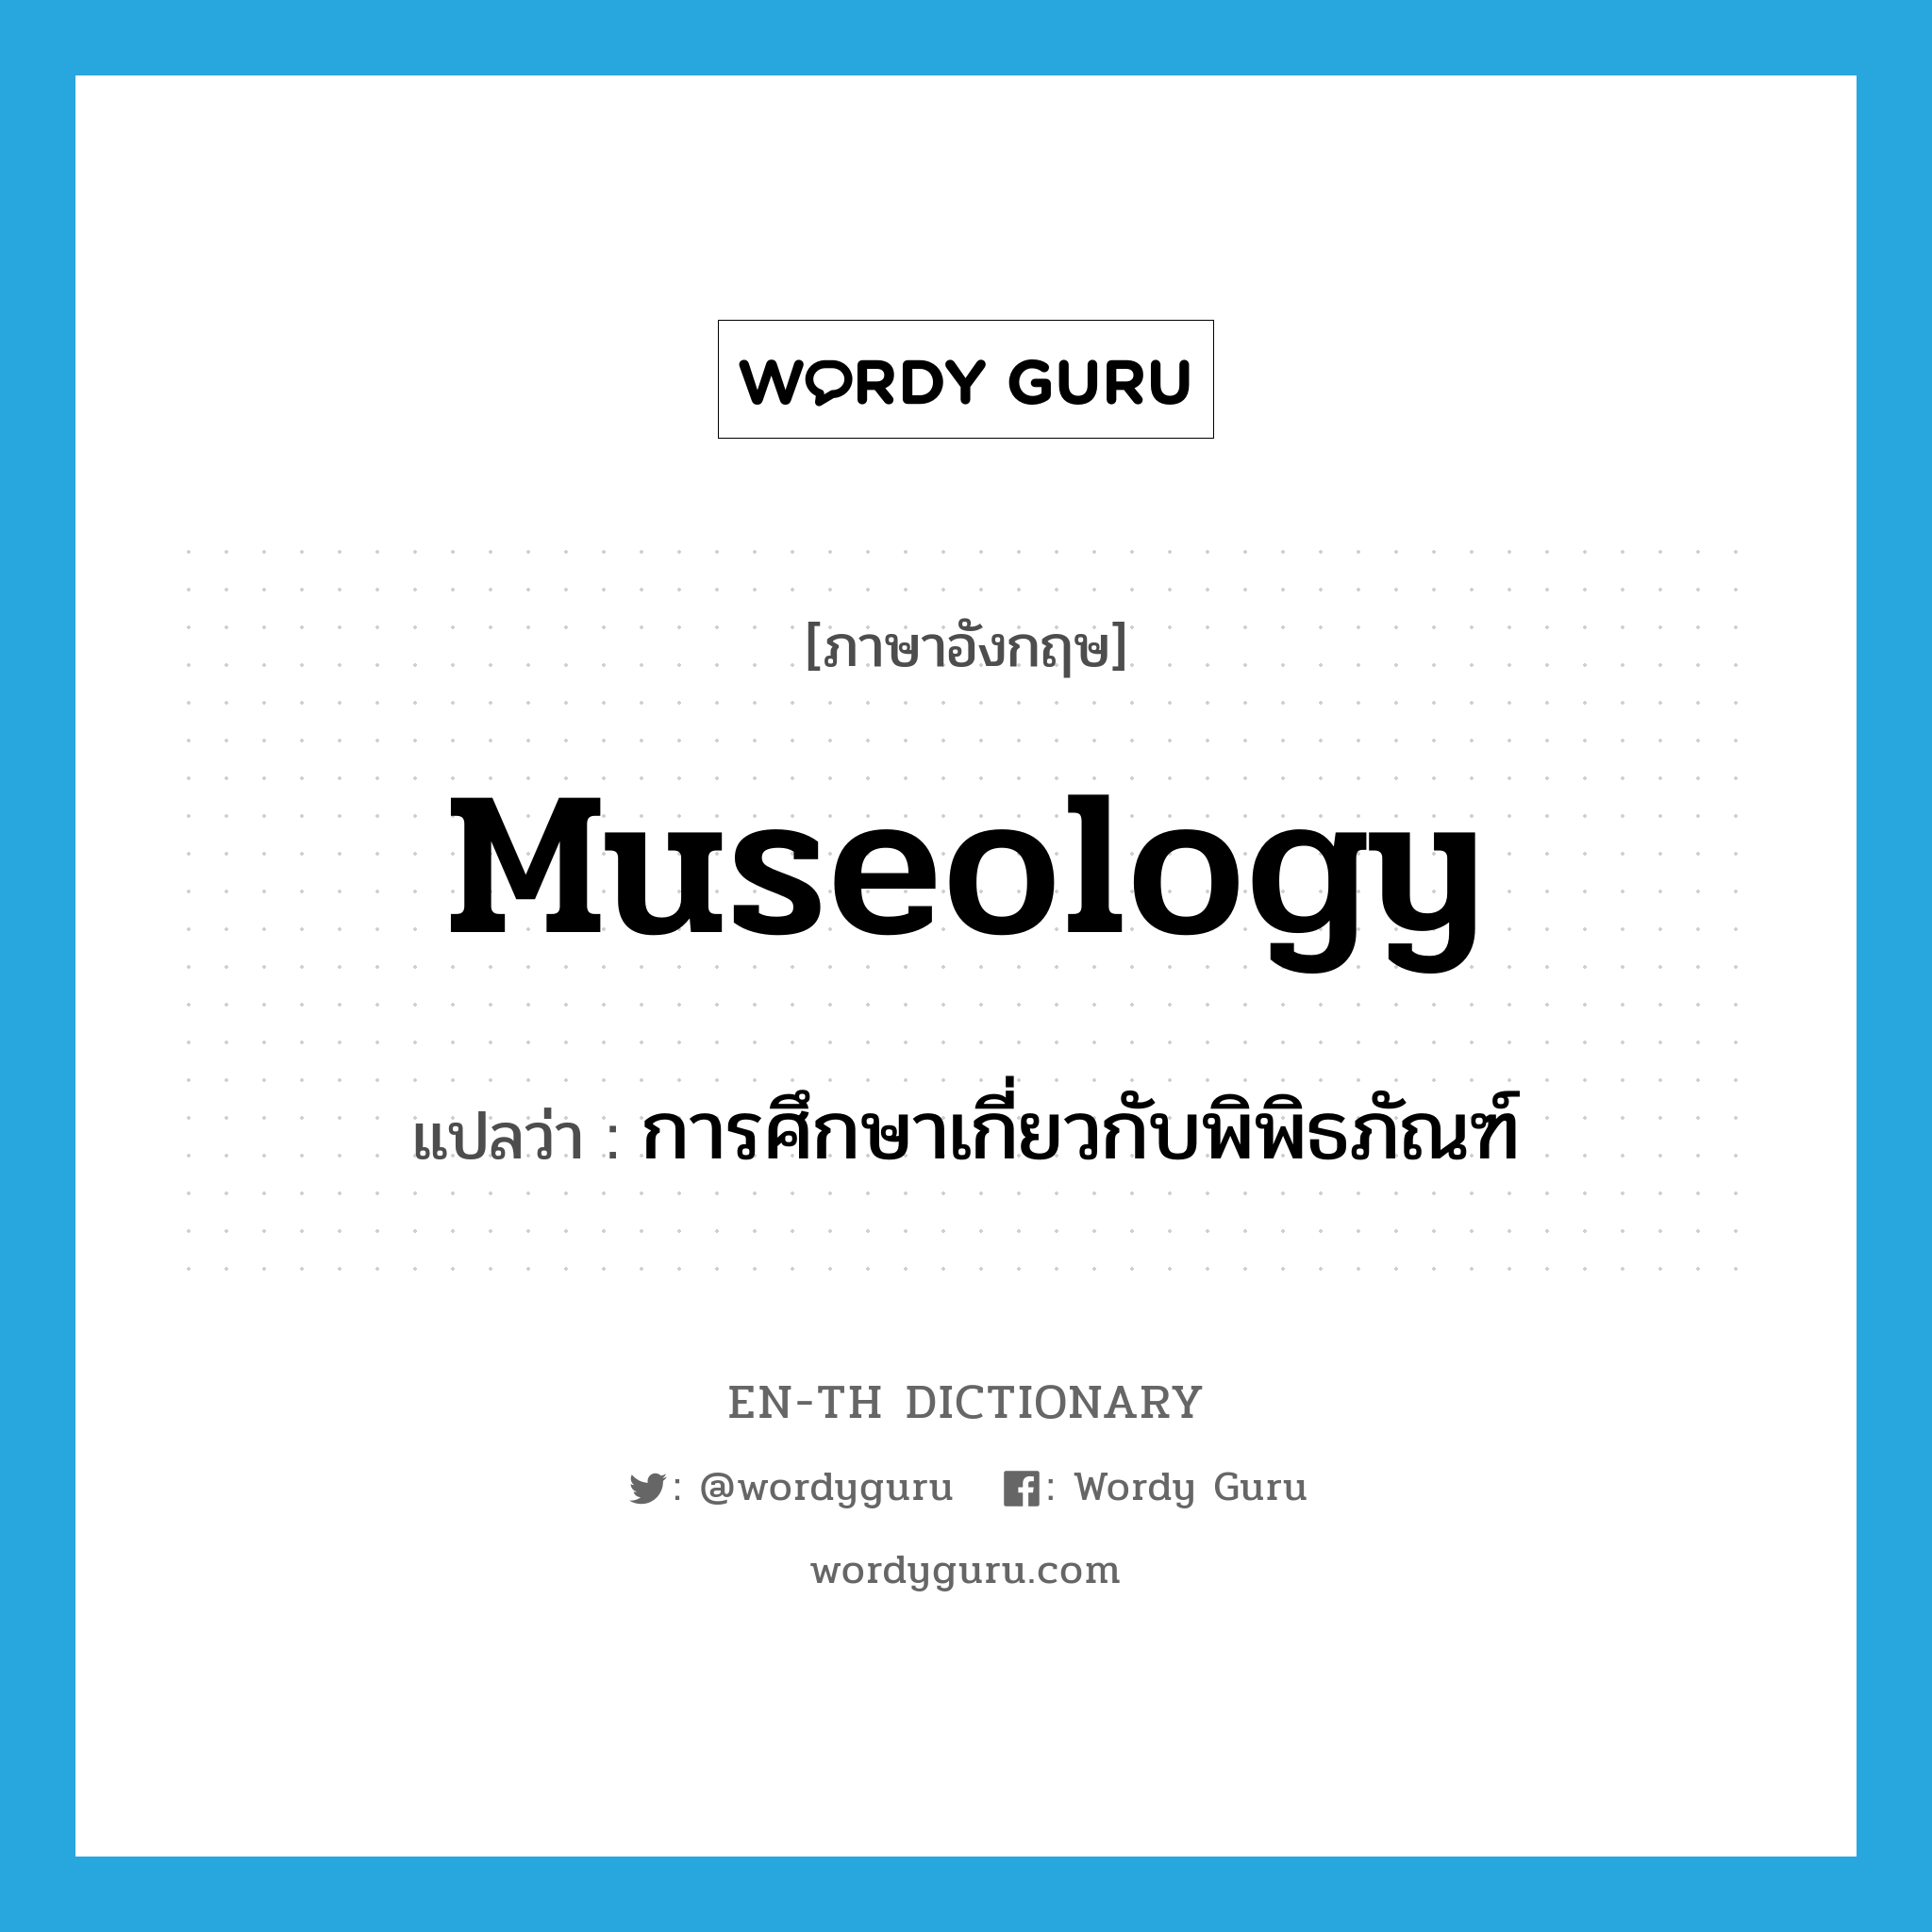 museology แปลว่า?, คำศัพท์ภาษาอังกฤษ museology แปลว่า การศึกษาเกี่ยวกับพิพิธภัณฑ์ ประเภท N หมวด N